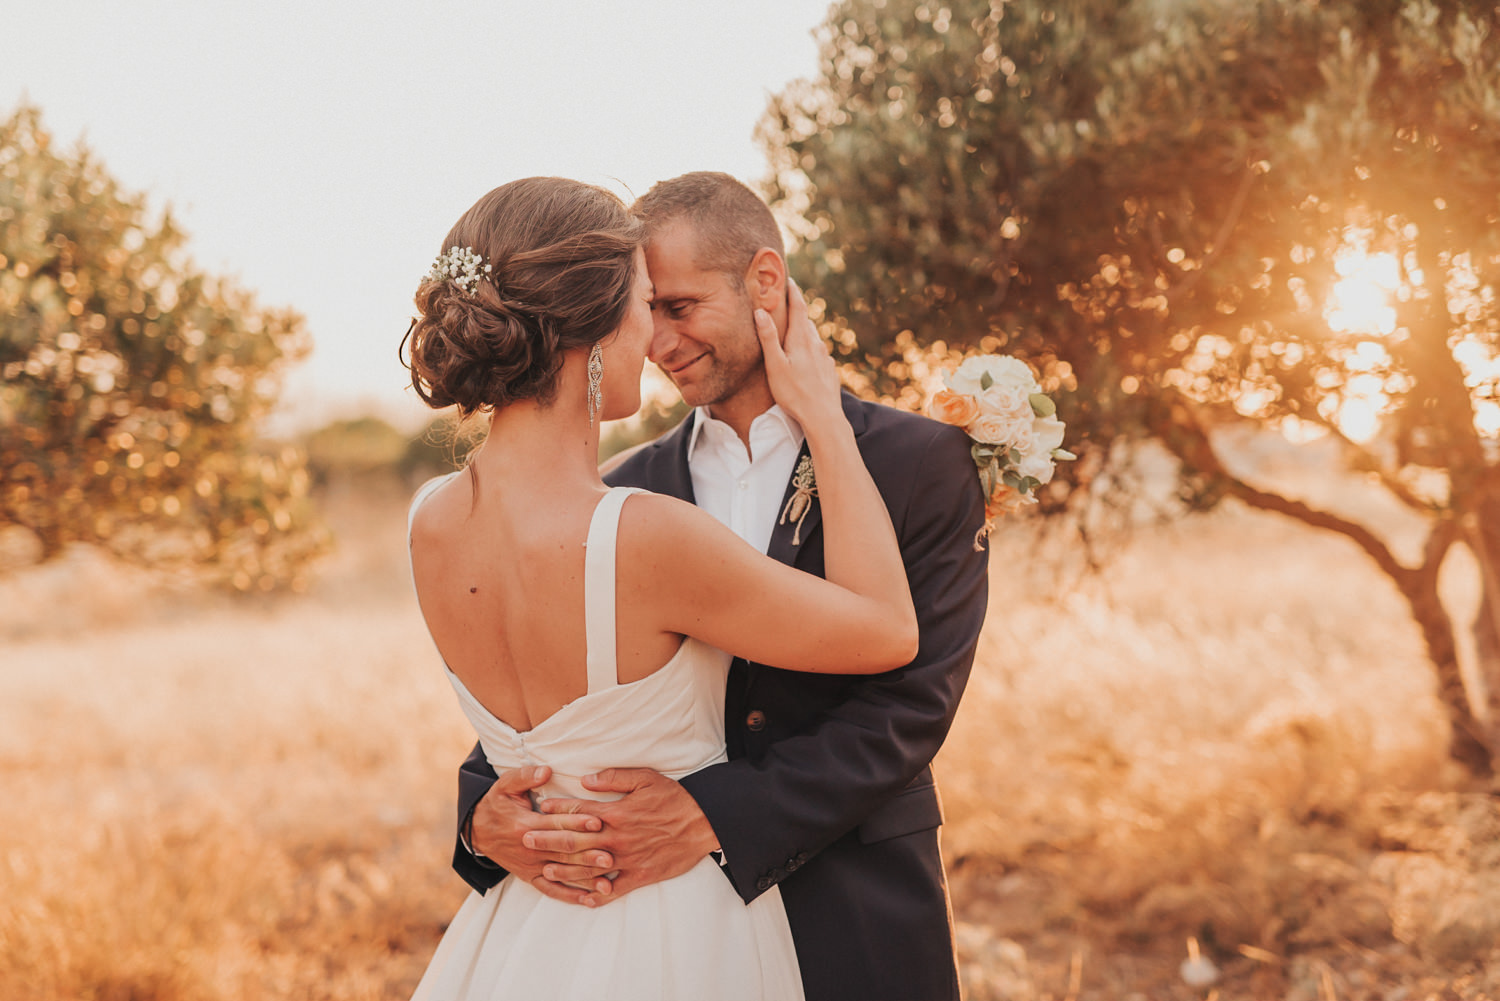 Hochzeitsfotograf-Kreta-Auslandshochzeit-Destination-wedding-crete-greece-wedding photographer